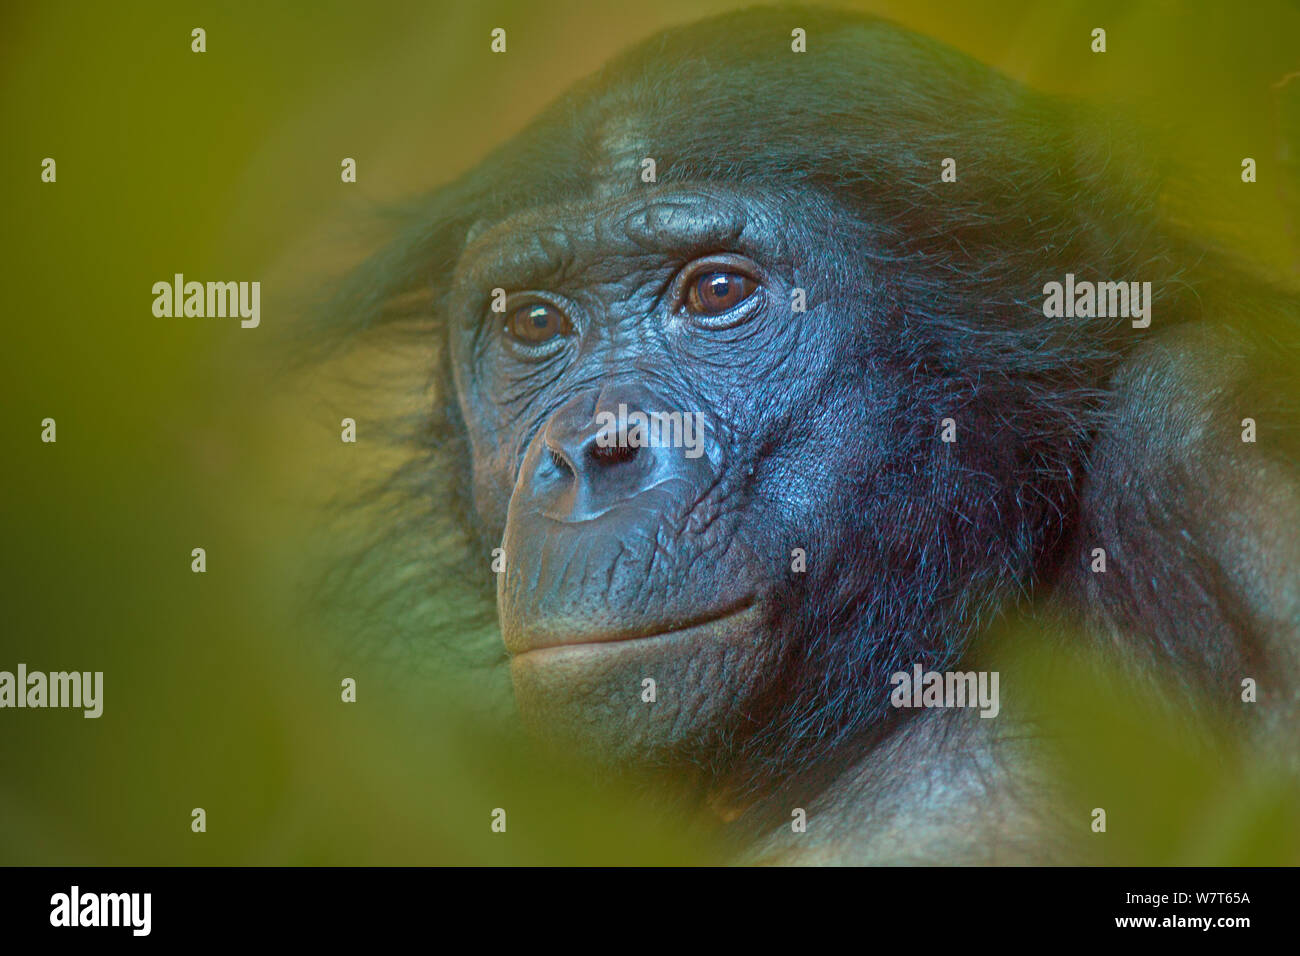 Bonobo (Pan paniscus) unverlierbaren, Porträt, beheimatet im Kongobecken. Blätter digital aufgenommen. Stockfoto